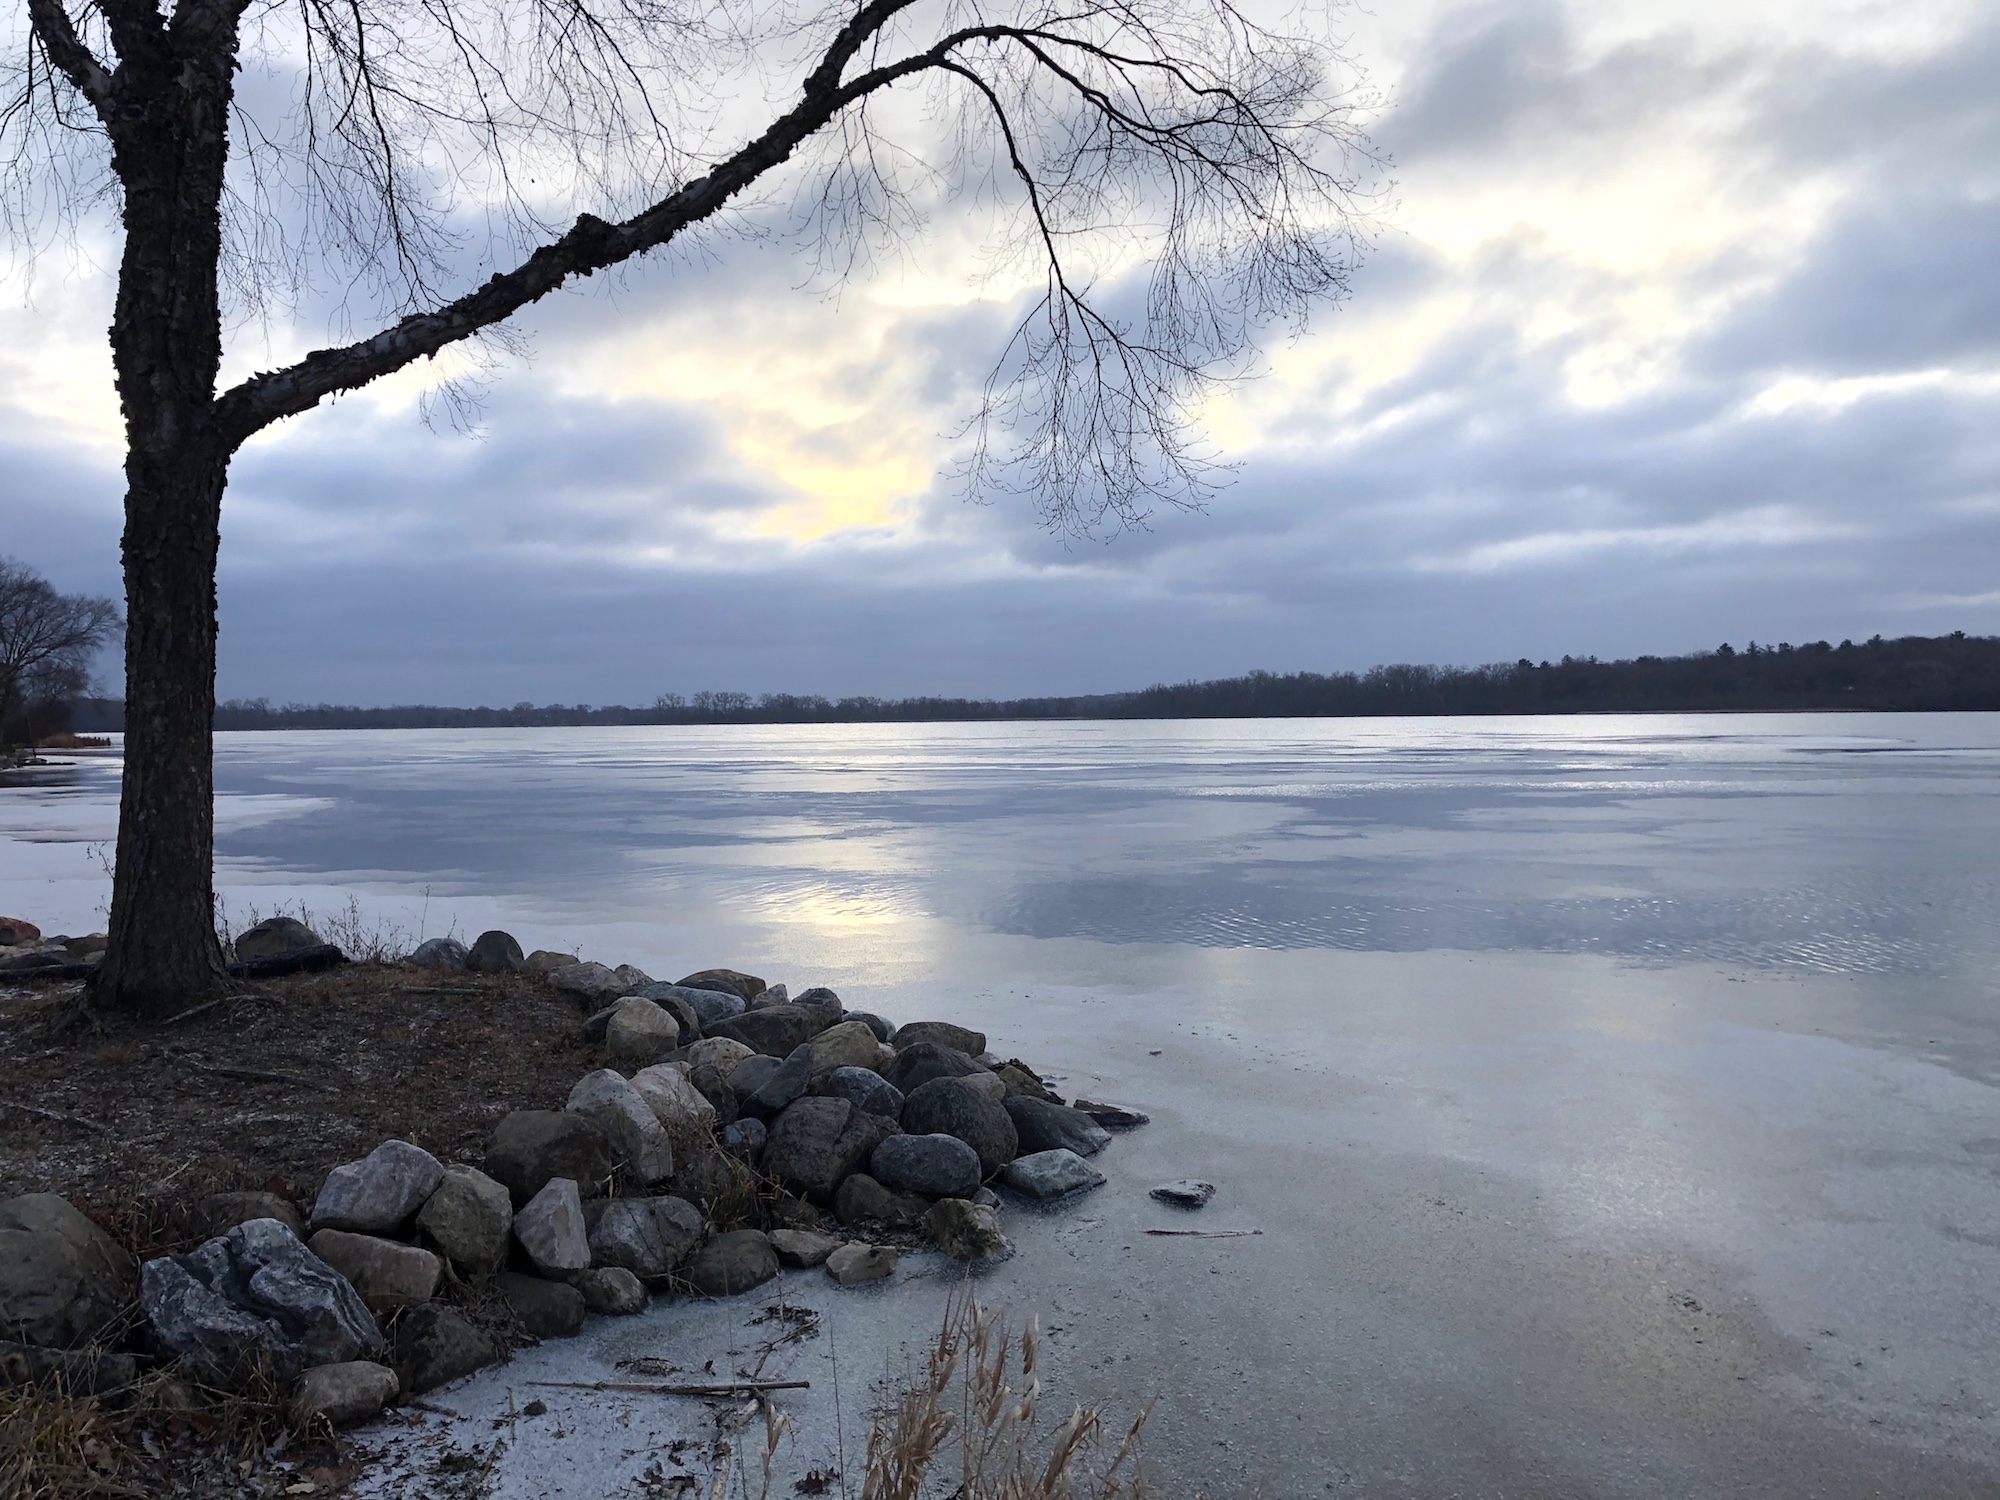 Lake Wingra on December 10, 2019.